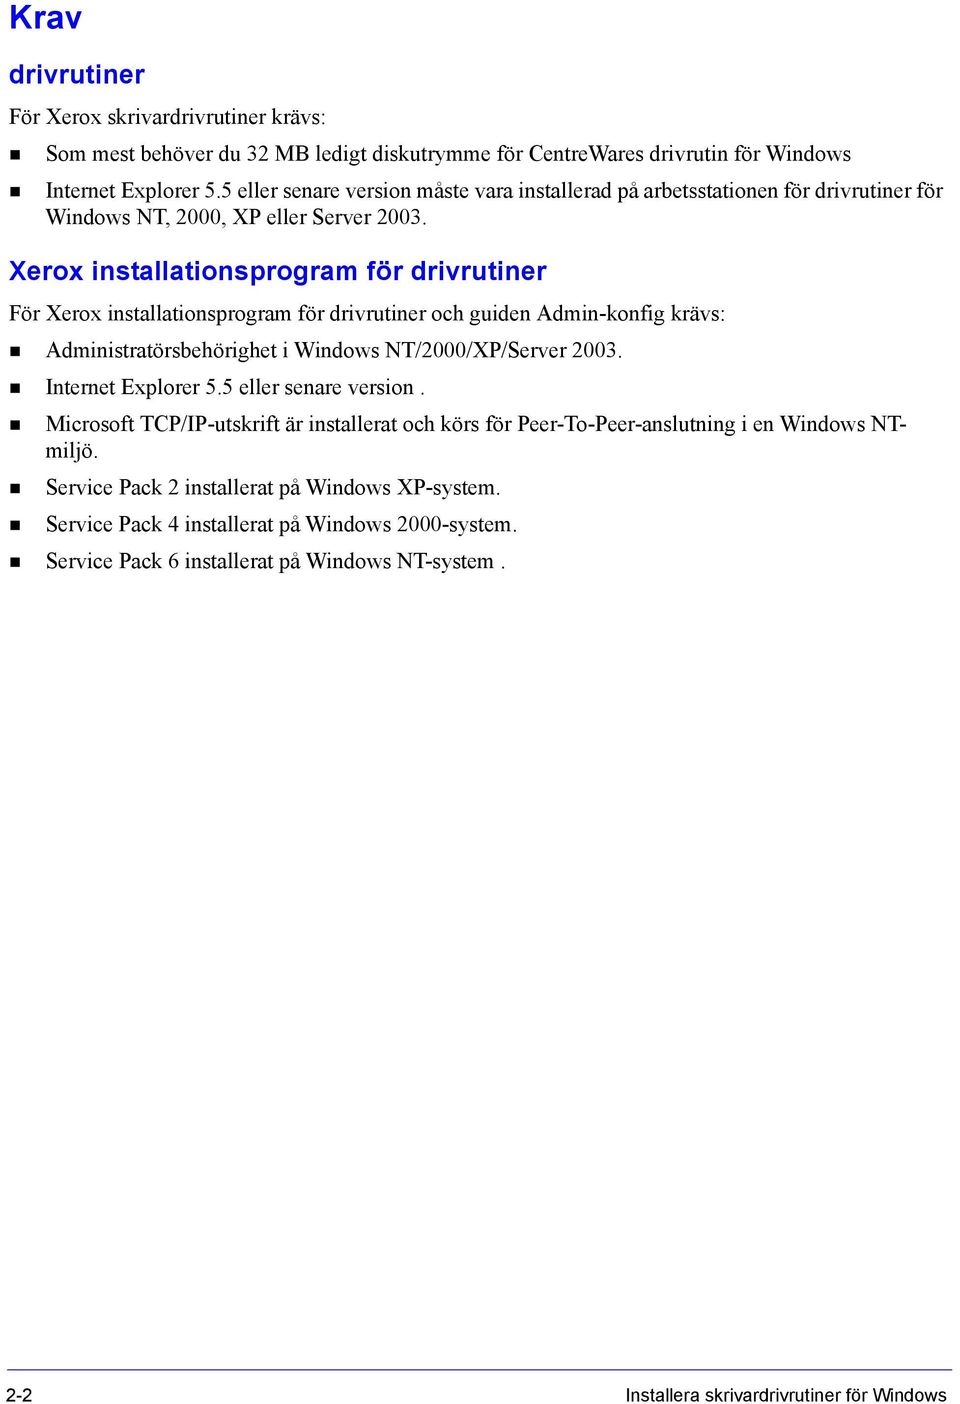 Xerox installationsprogram för drivrutiner För Xerox installationsprogram för drivrutiner och guiden Admin-konfig krävs: Administratörsbehörighet i Windows NT/2000/XP/Server 2003. Internet Explorer 5.